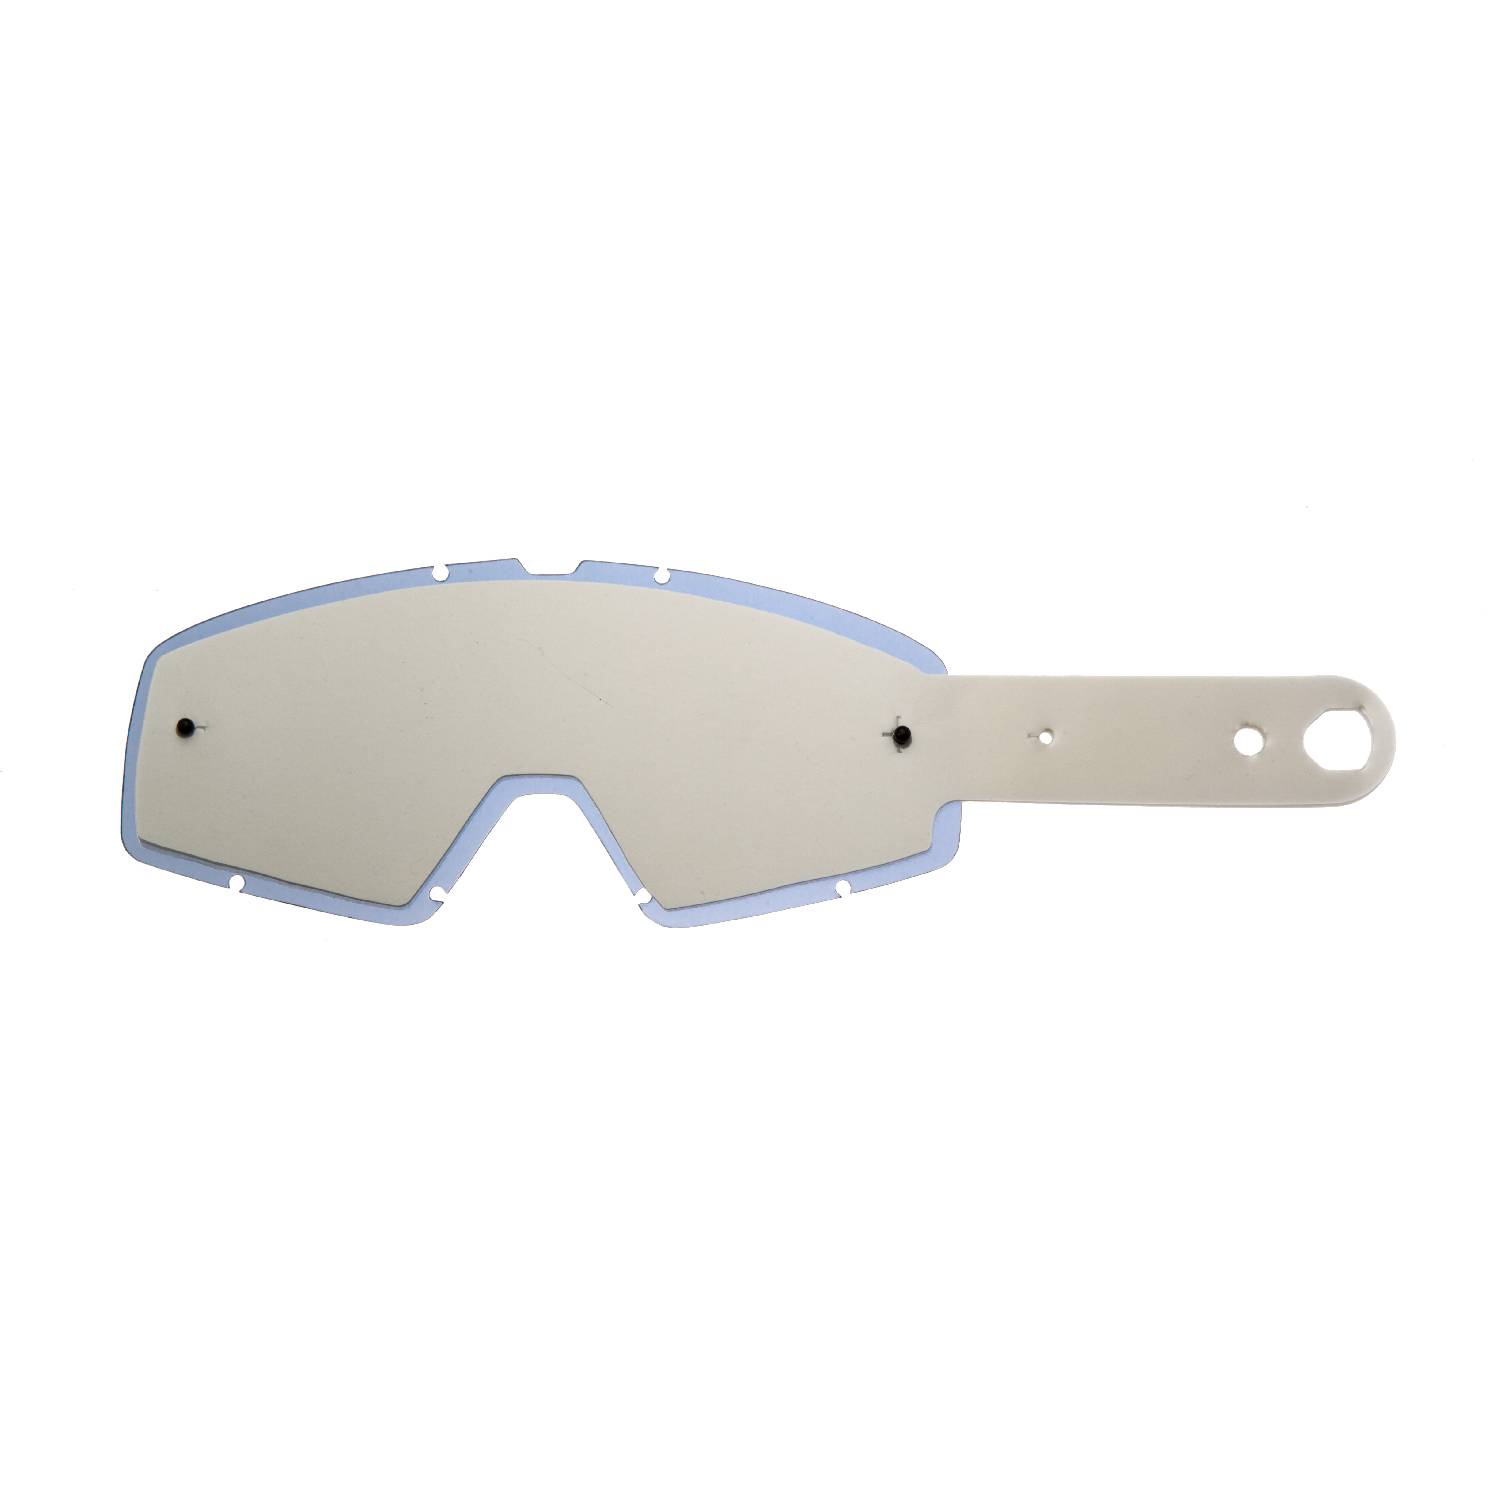 Lente fumè + 10 Strappi (Combo) compatibile per occhiale/maschera Fox Main Pro Mx